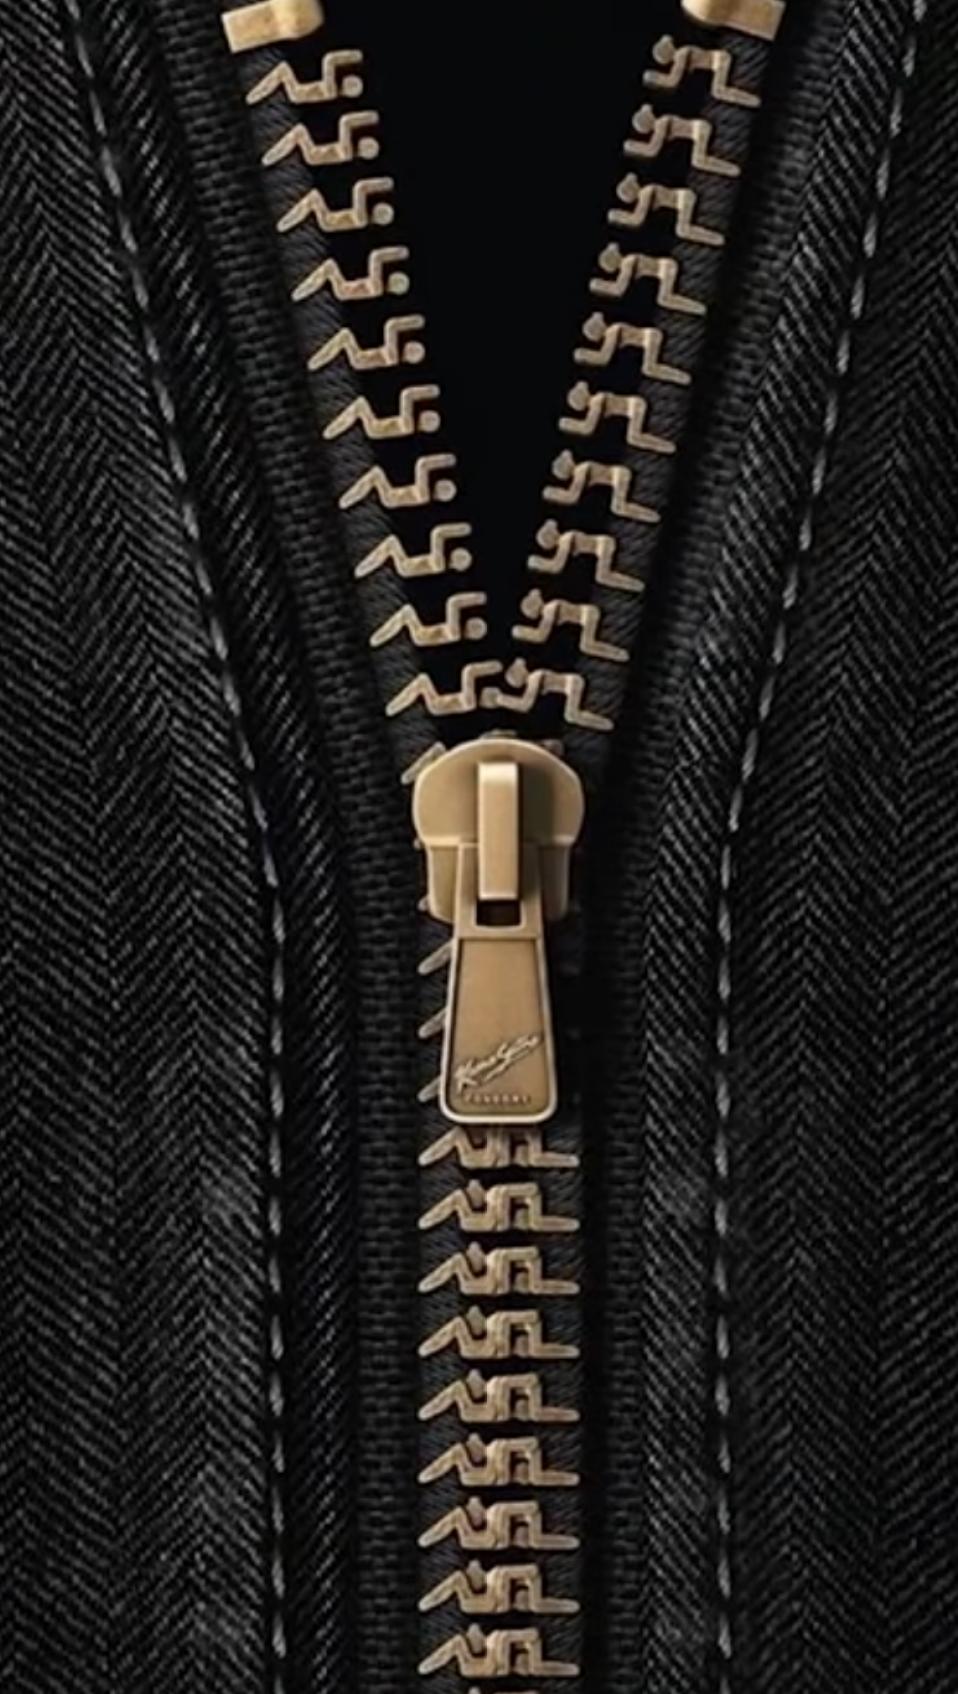 69 zipper jacket